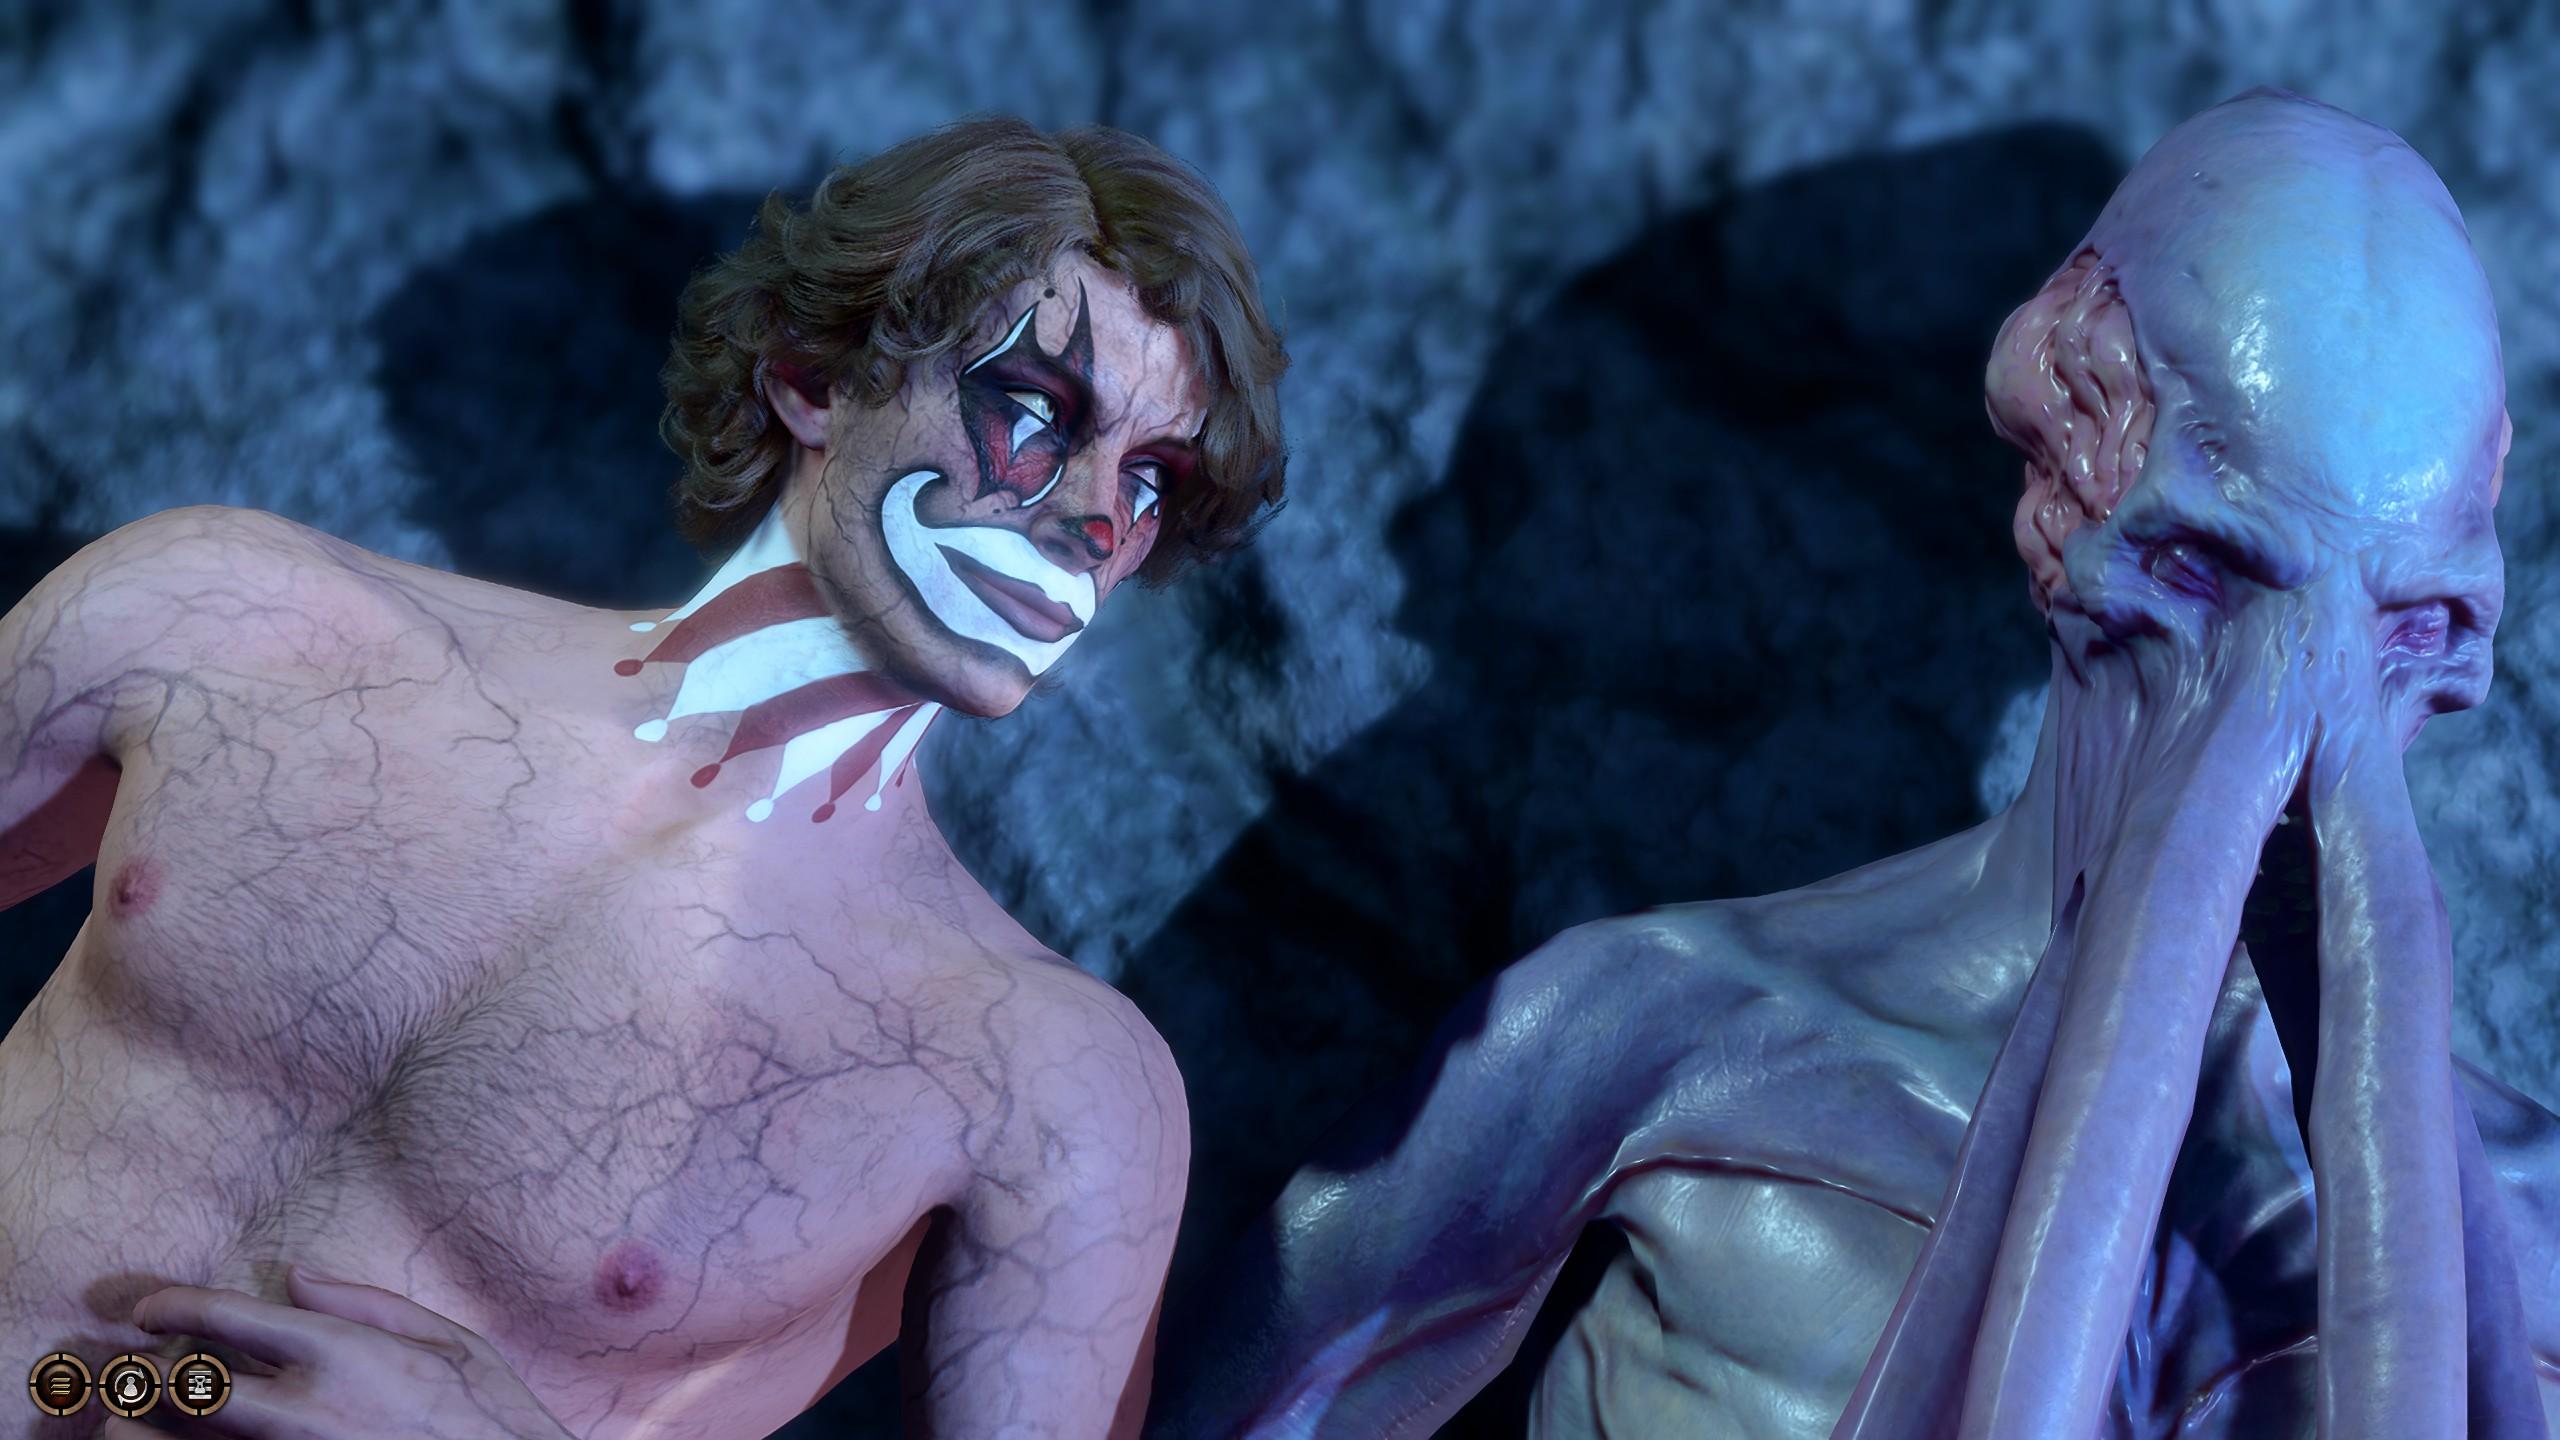 Baldur's Gate 3 character in clown makeup with Emperor in romance scene